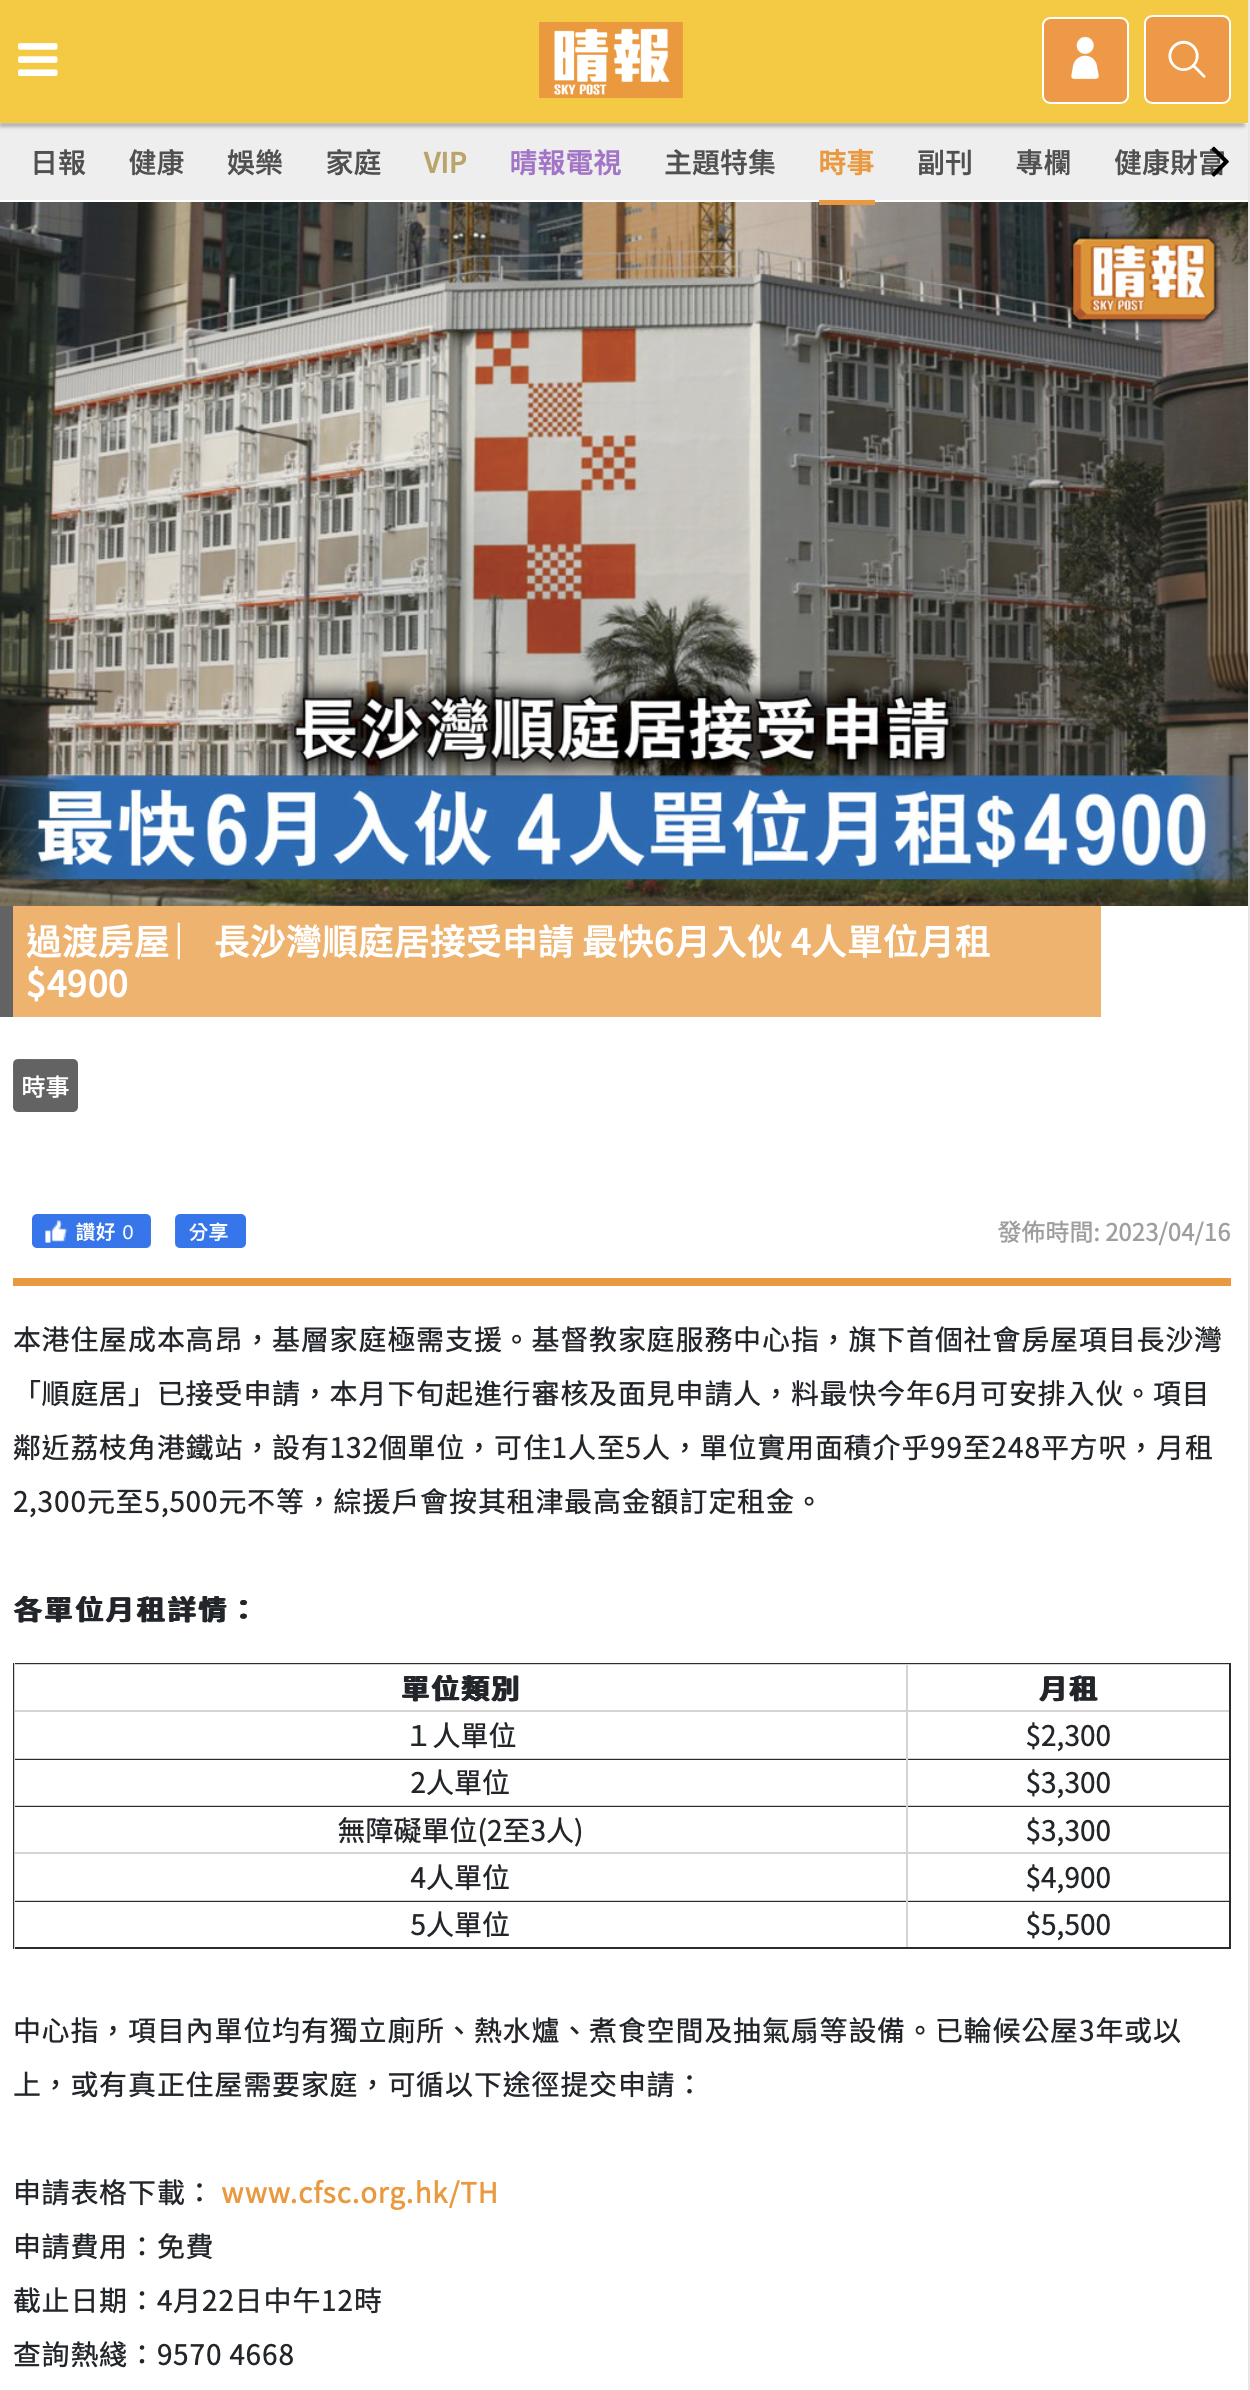 過渡房屋 ︳長沙灣順庭居接受申請 最快6月入伙 4人單位月租$4900